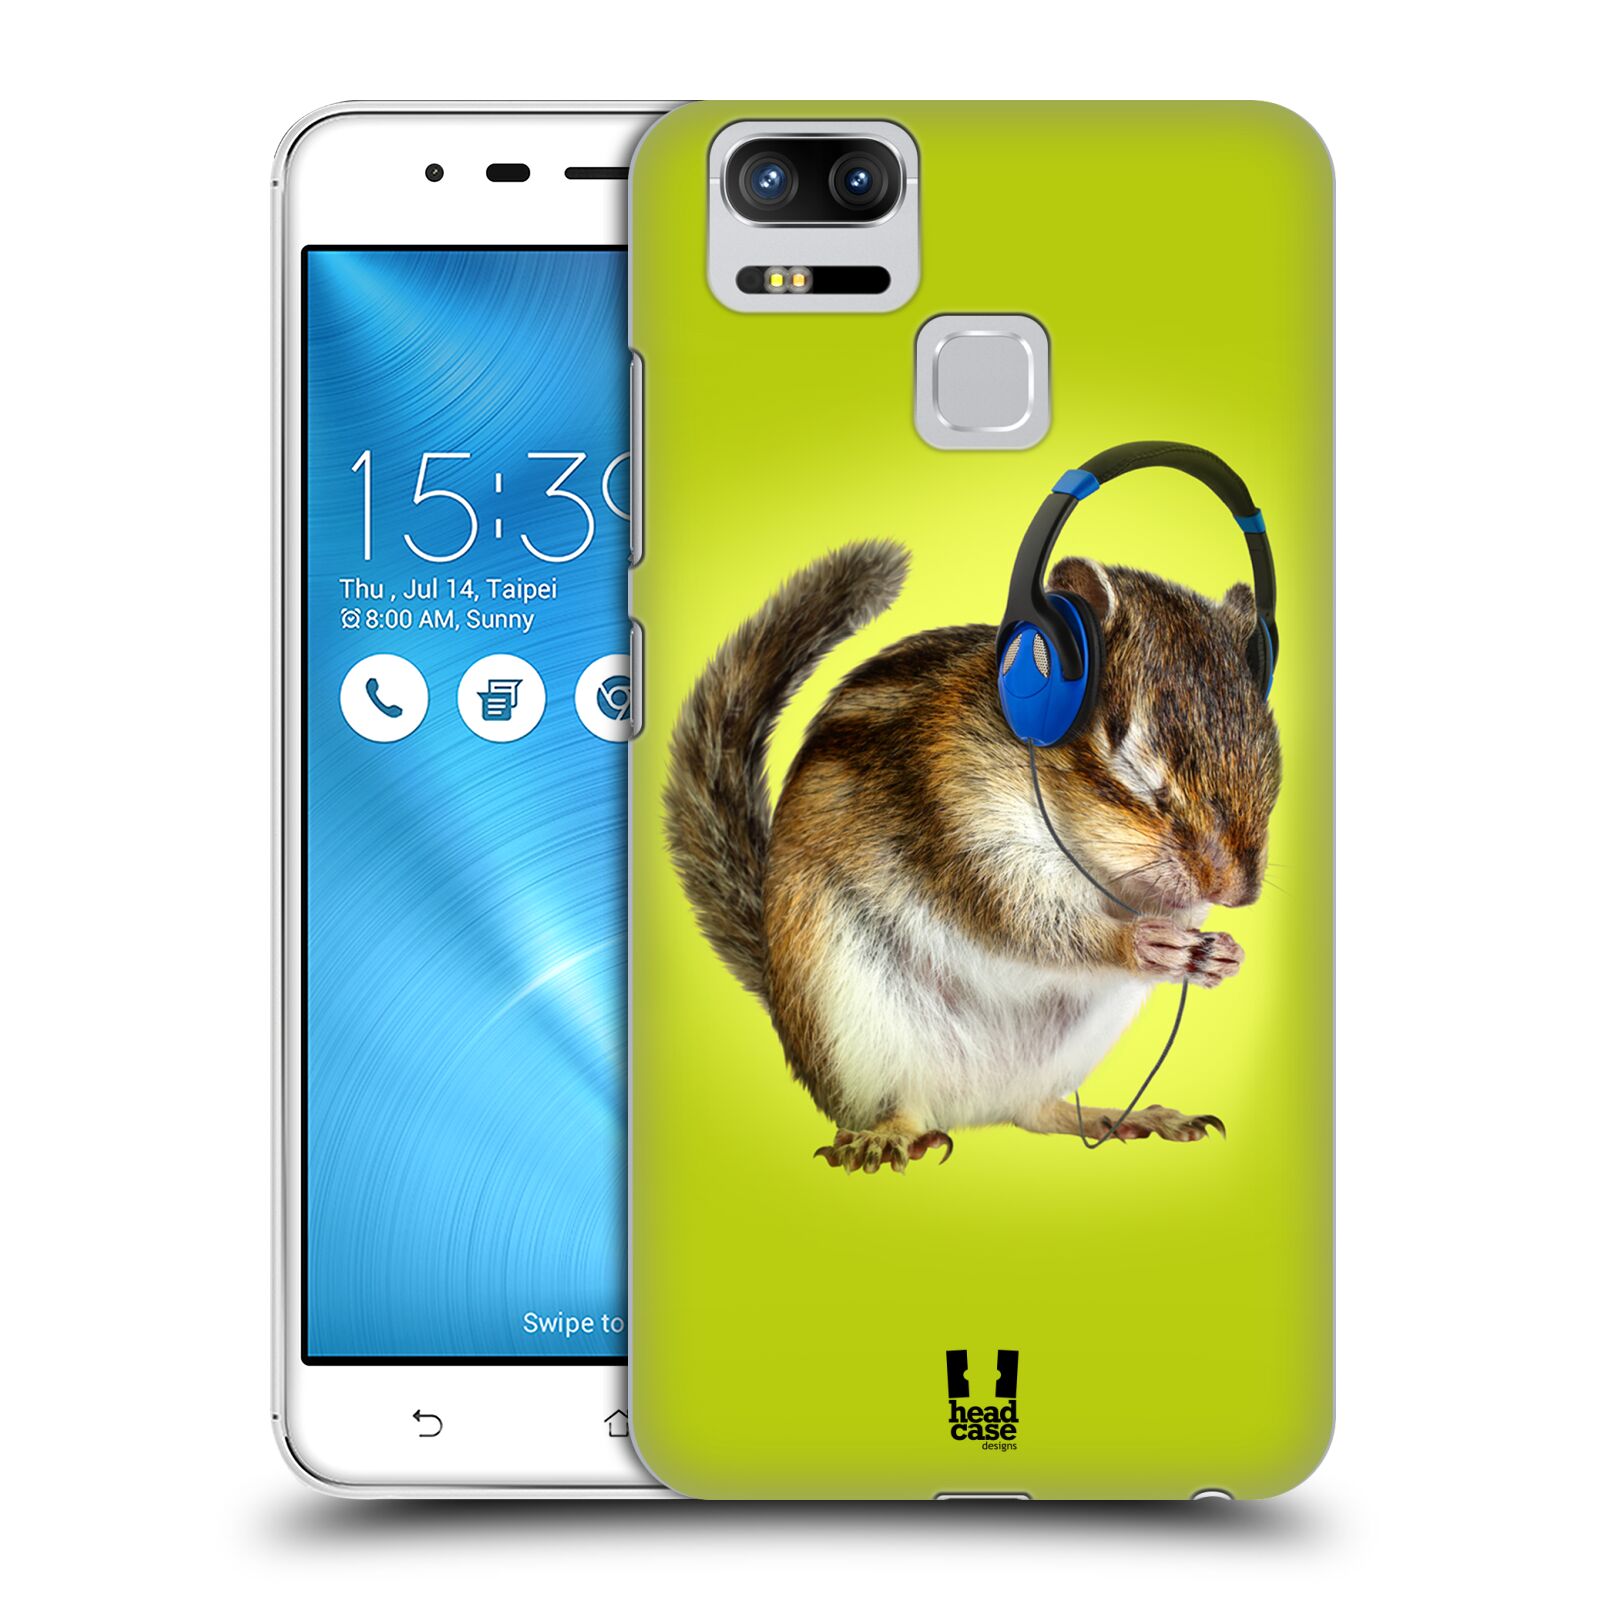 HEAD CASE plastový obal na mobil Asus Zenfone 3 Zoom ZE553KL vzor Legrační zvířátka veverka se sluchátky